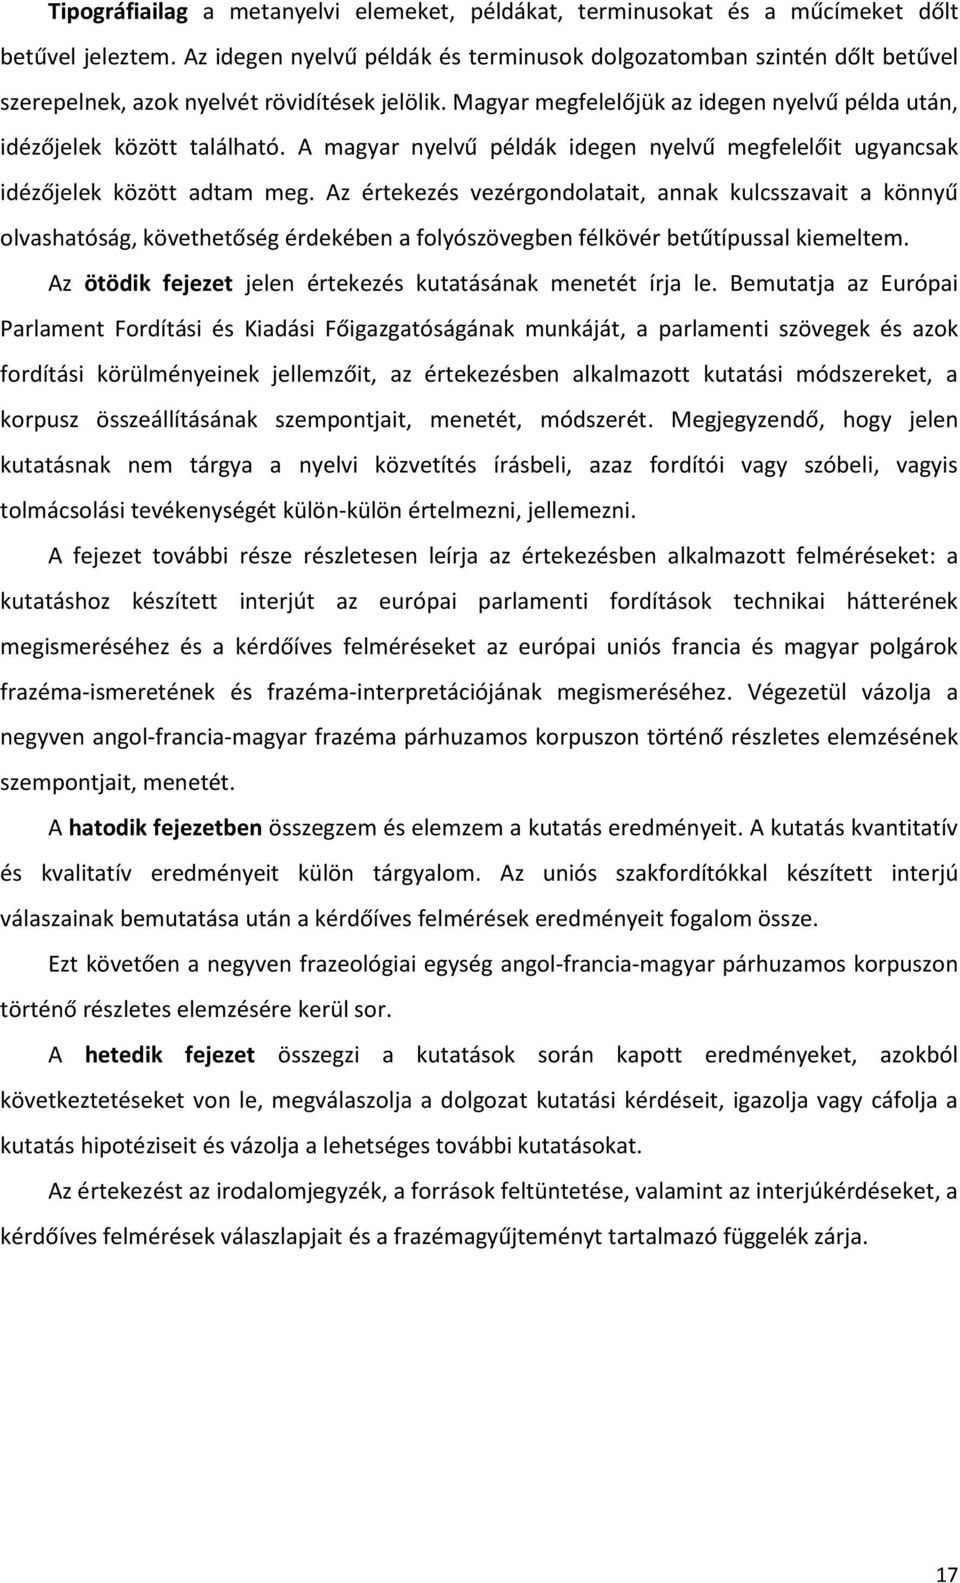 A magyar nyelvű példák idegen nyelvű megfelelőit ugyancsak idézőjelek között adtam meg.